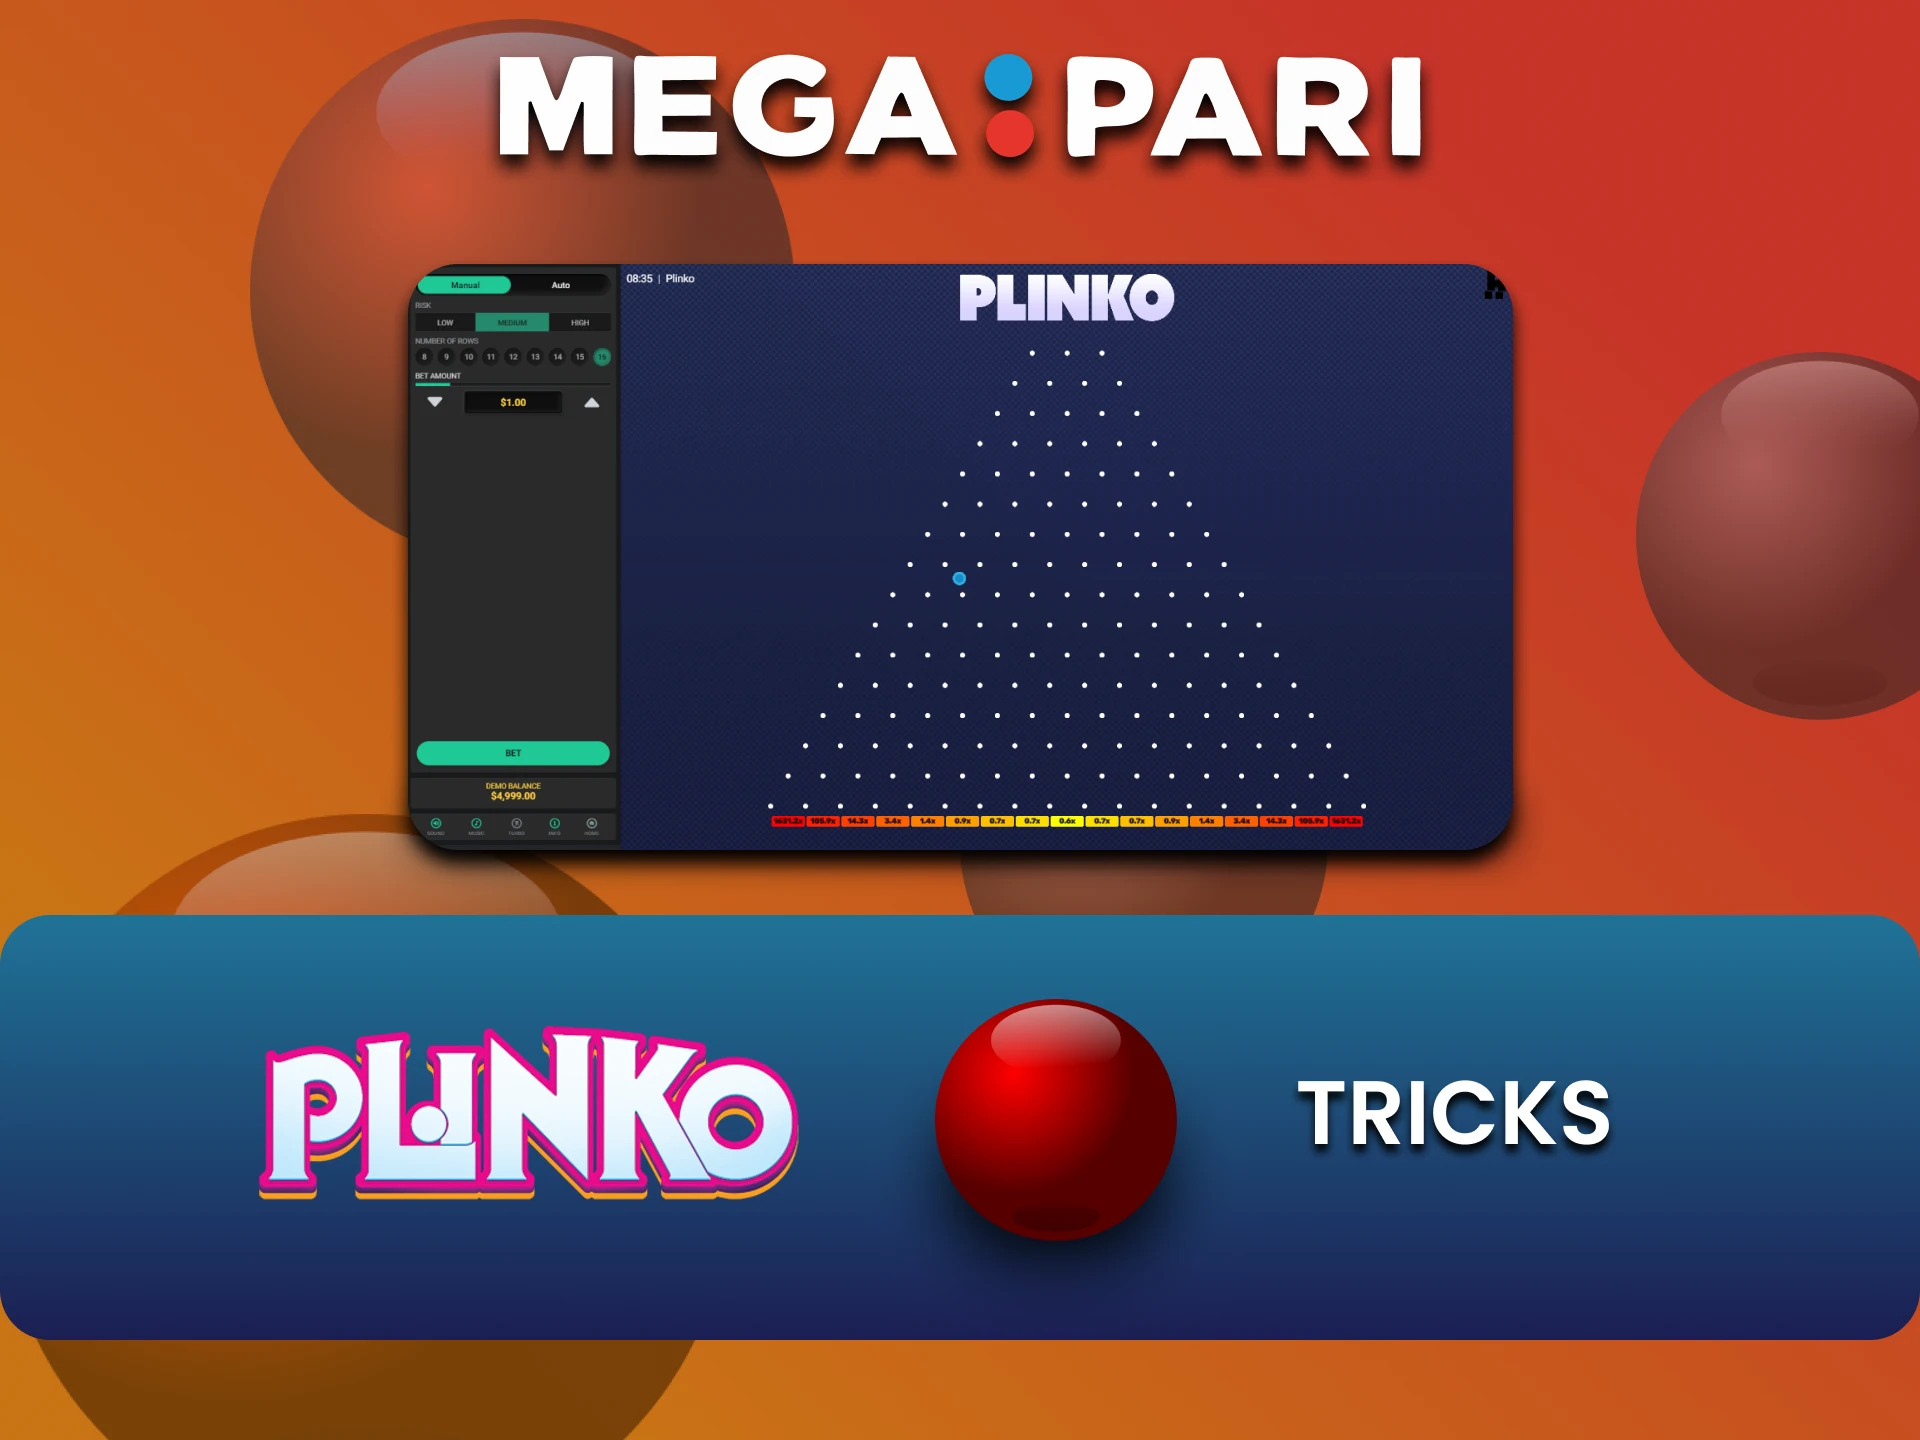 Learn the tricks to win at Plinko on Megapari.